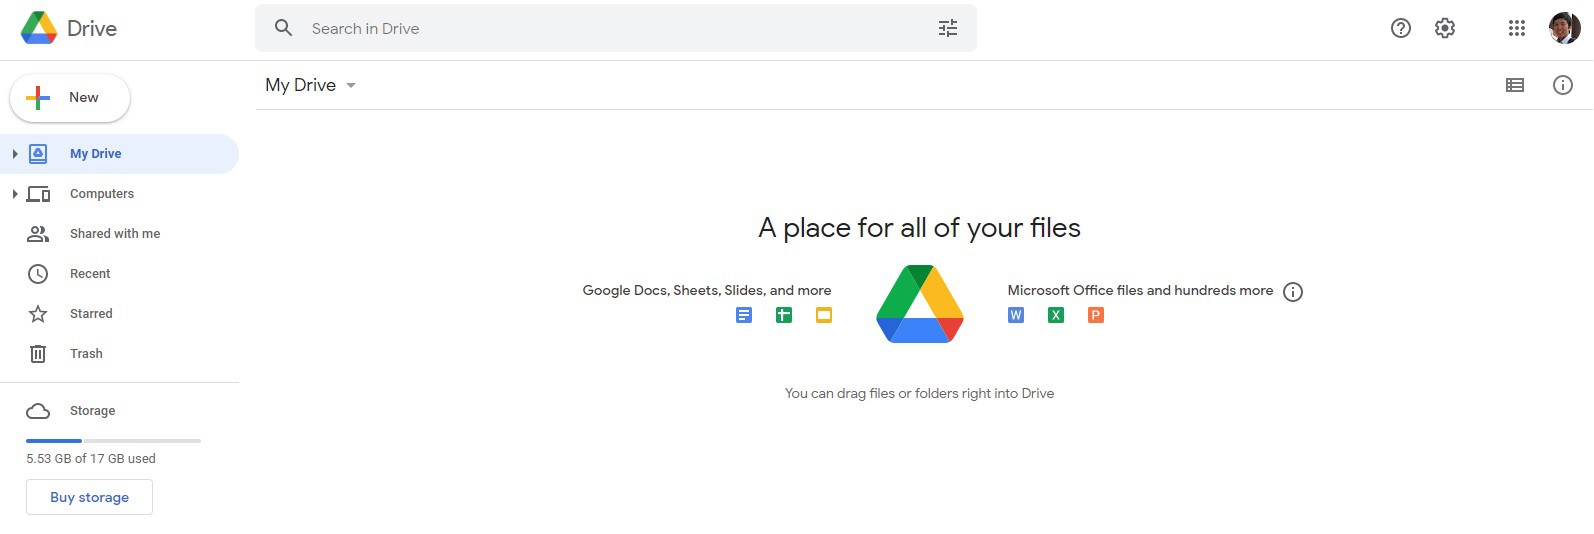 Hướng dẫn sử dụng Google Drive trên trình duyệt web